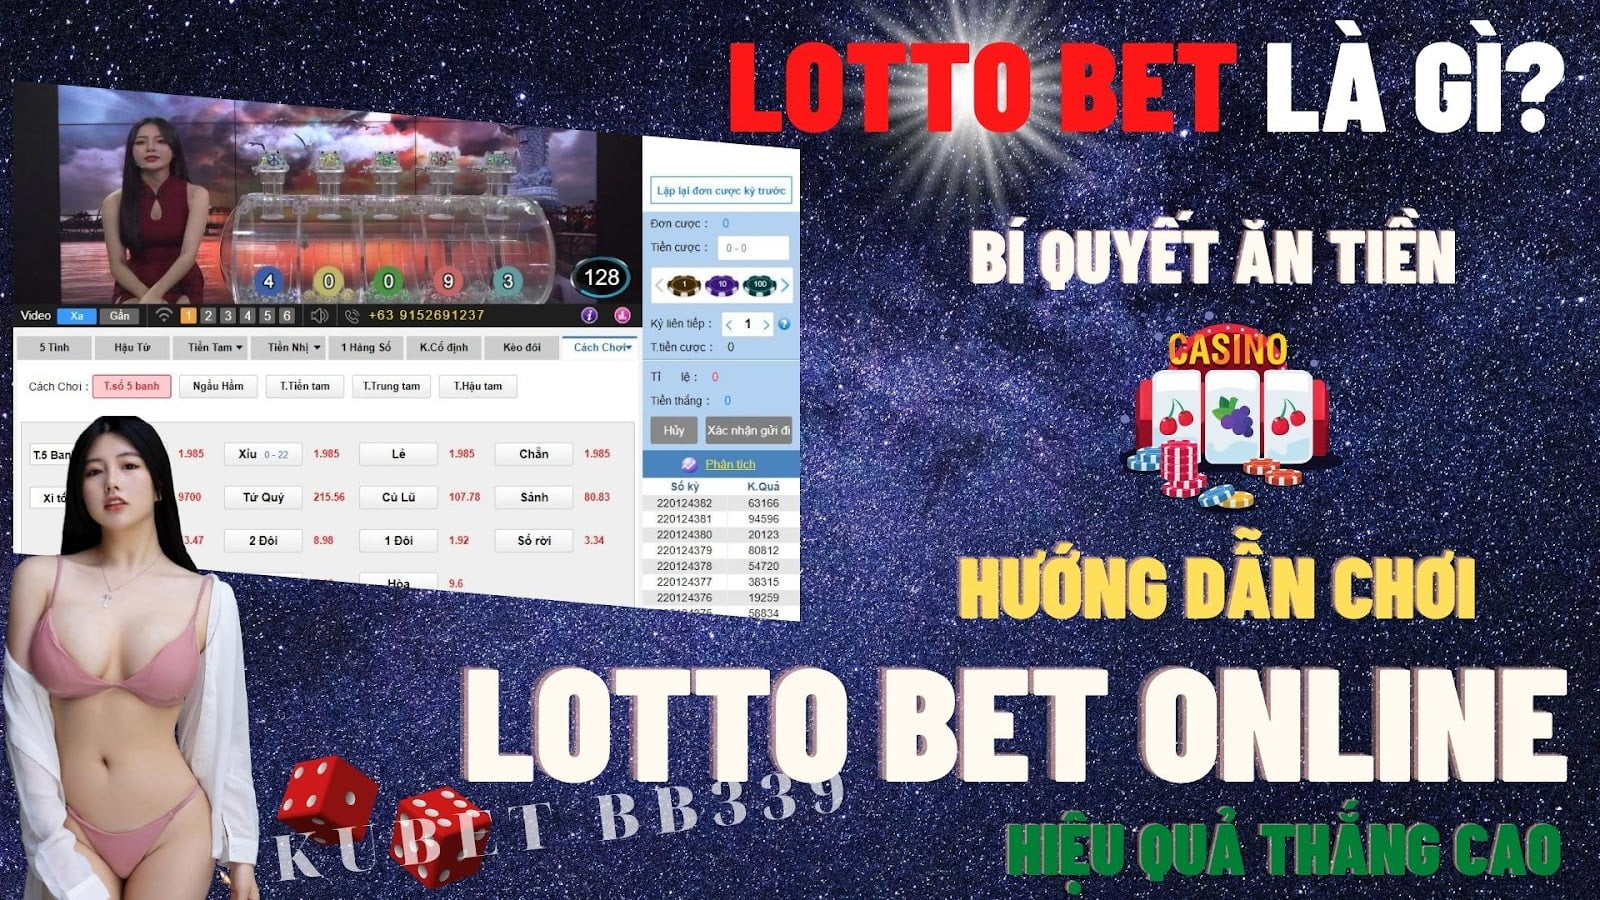 Lotto Bet là gì? Hướng dẫn chơi Lotto Bet Online hiệu quả thắng cao